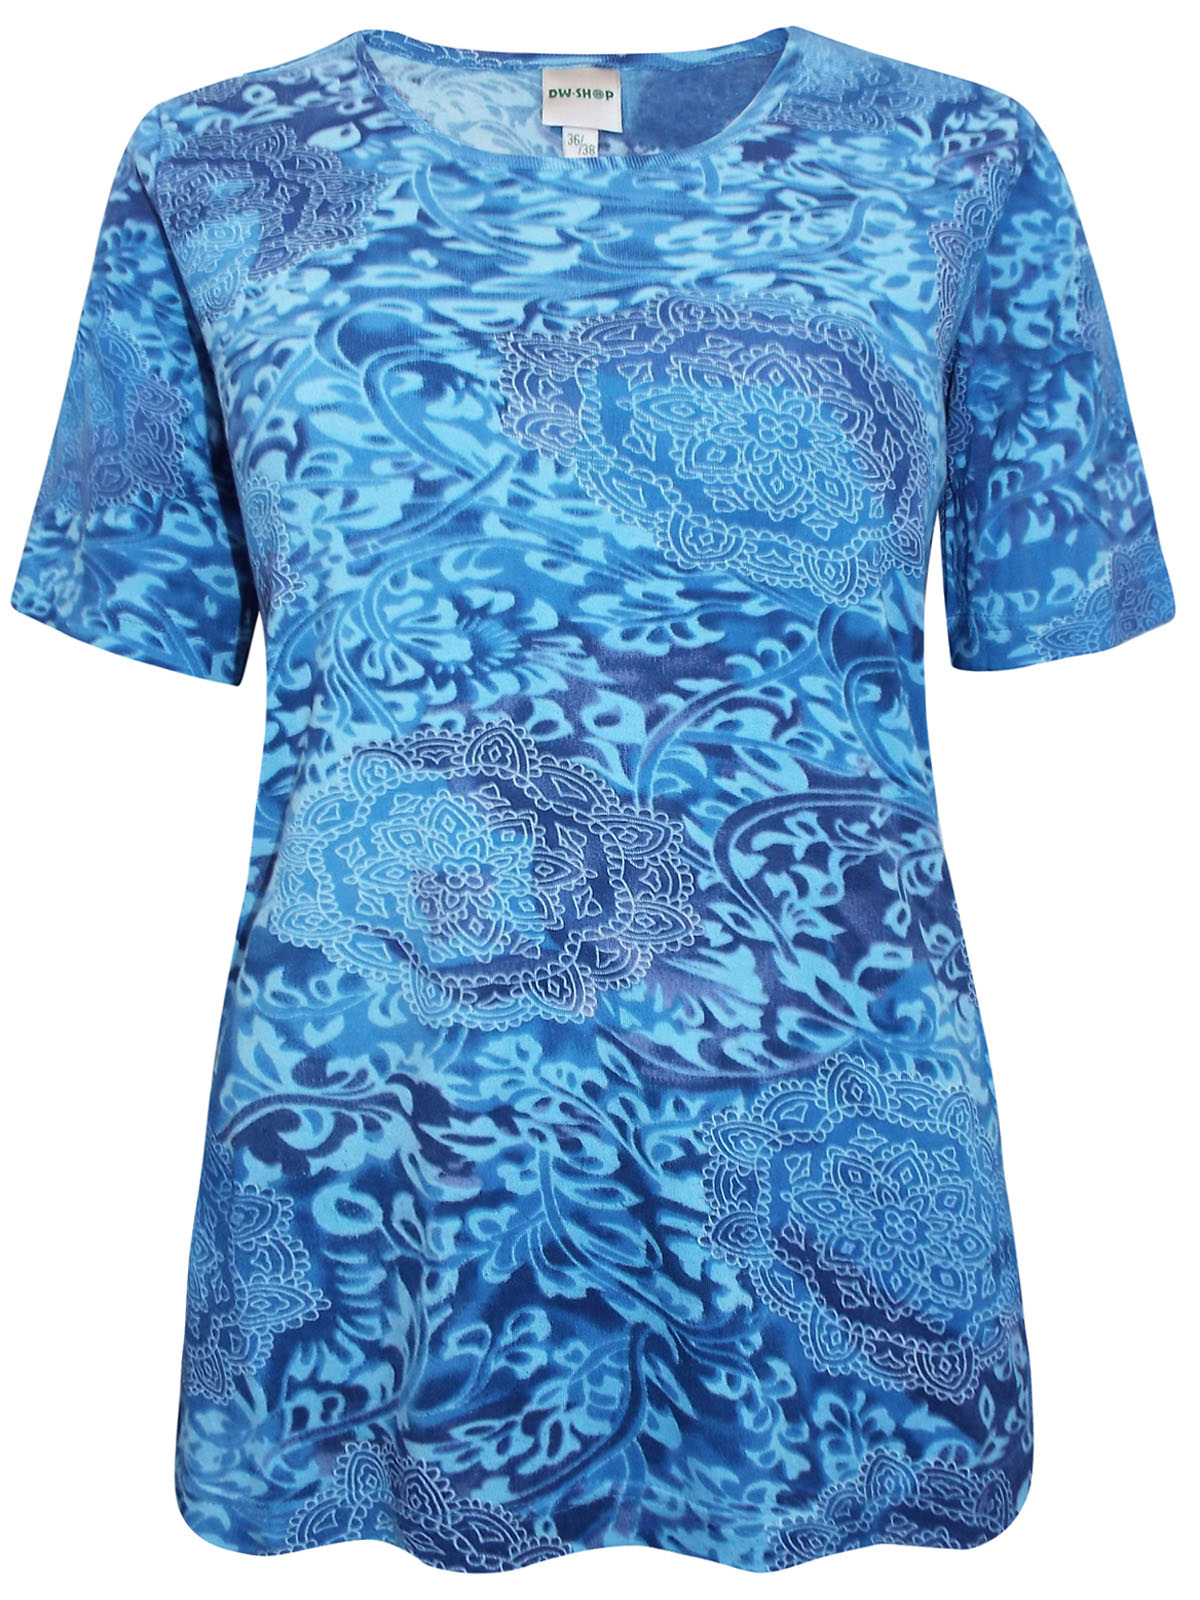 DW Shop - - DW Shop BLUE Pure Cotton Kaleidoscope Print T-Shirt - Size ...